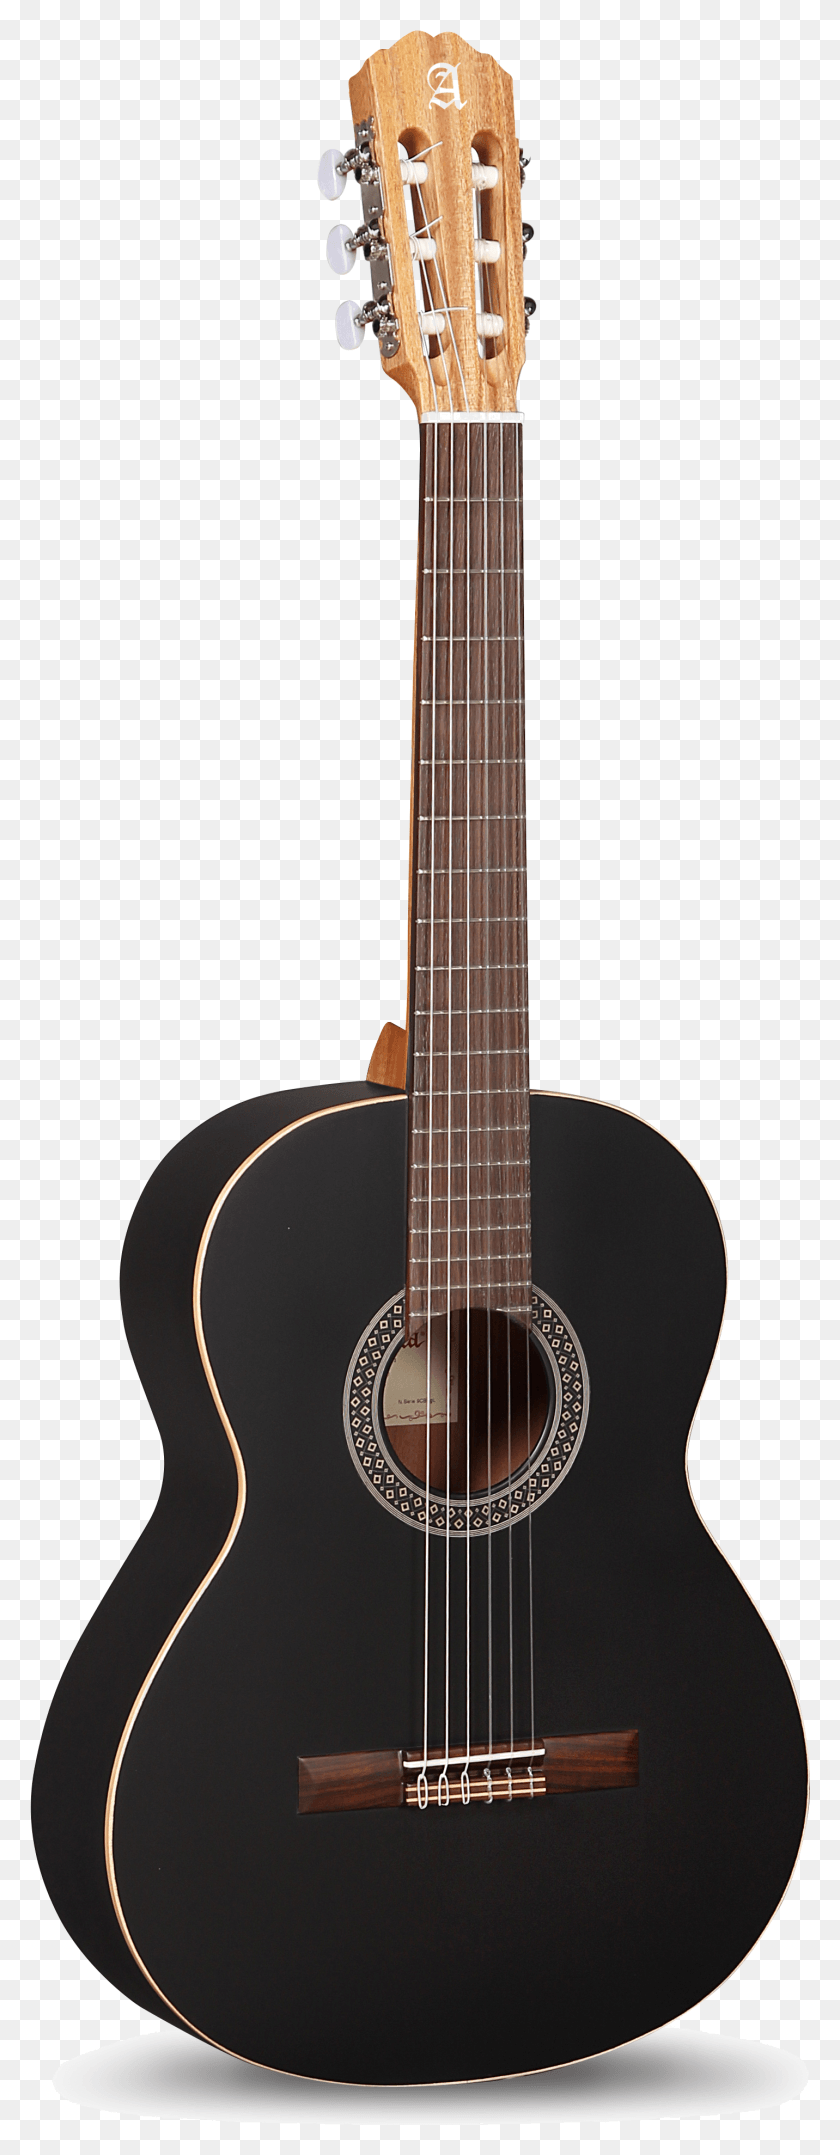 1432x3848 Descargar Png C Black Satin Martin 0017S Black Smoke, Guitarra, Actividades De Ocio, Instrumento Musical Hd Png